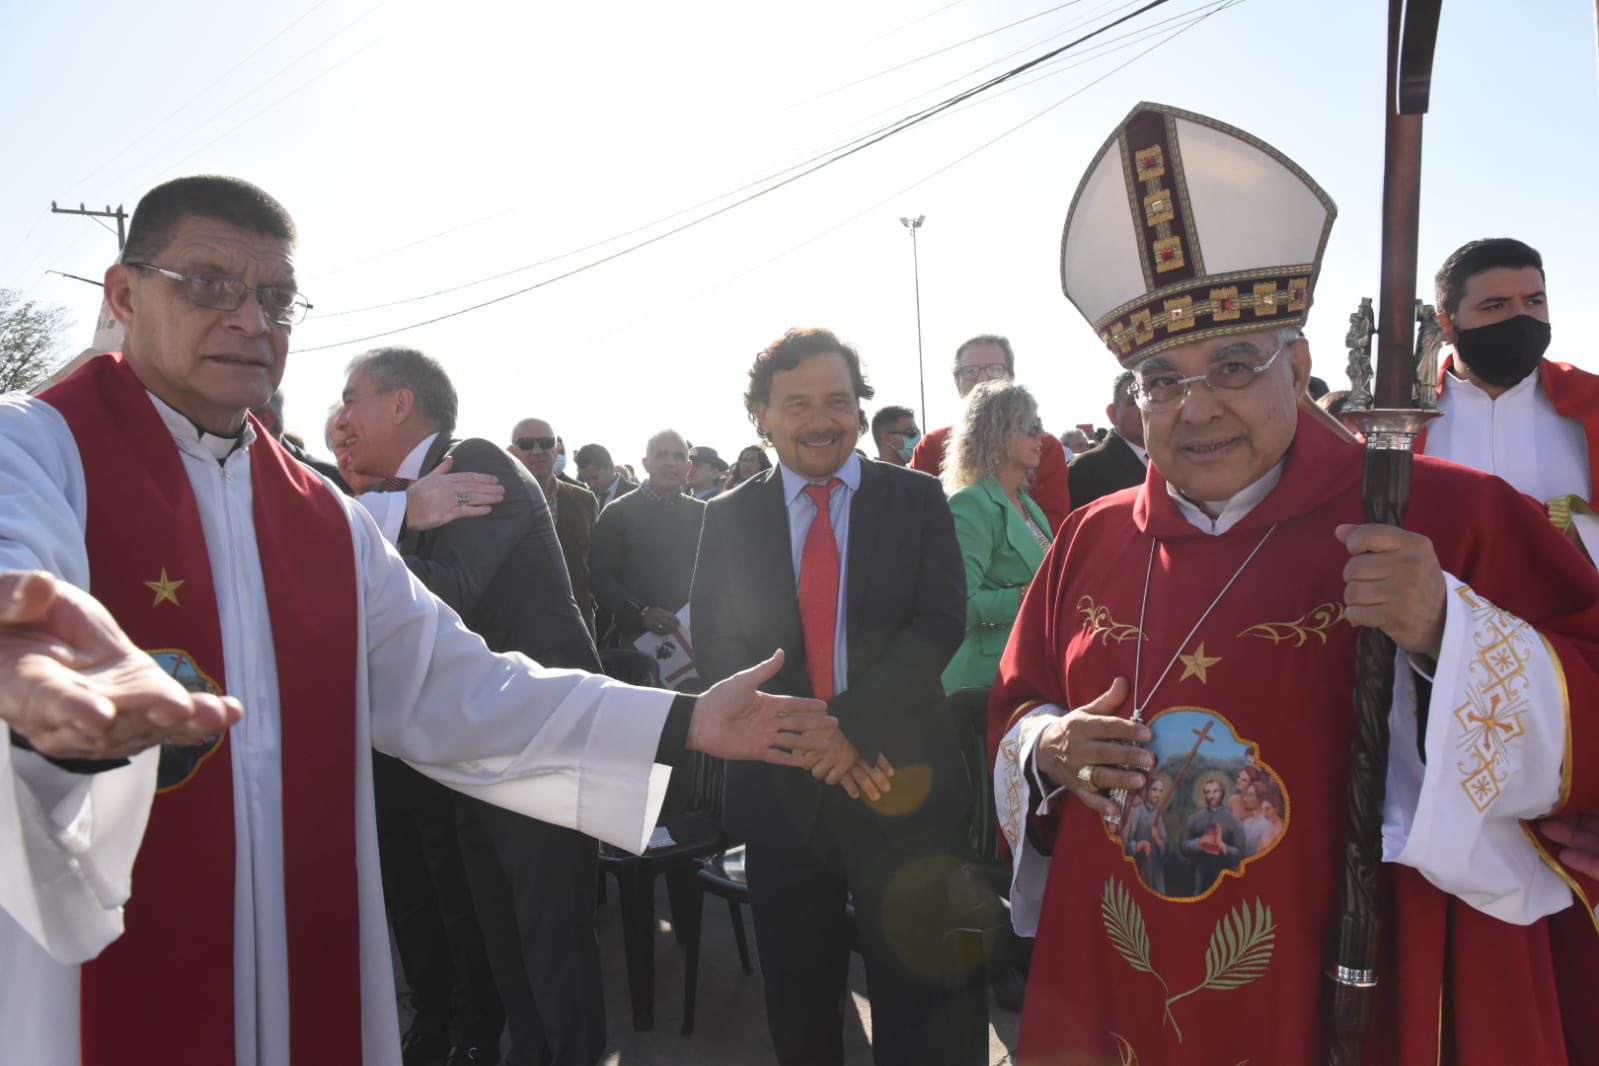 El cardenal Semeraro, que declaró beatos de Ortíz de Zárate y Solinas, y detrás el gobernador de Salta Gustavo Sáenz (Télam)